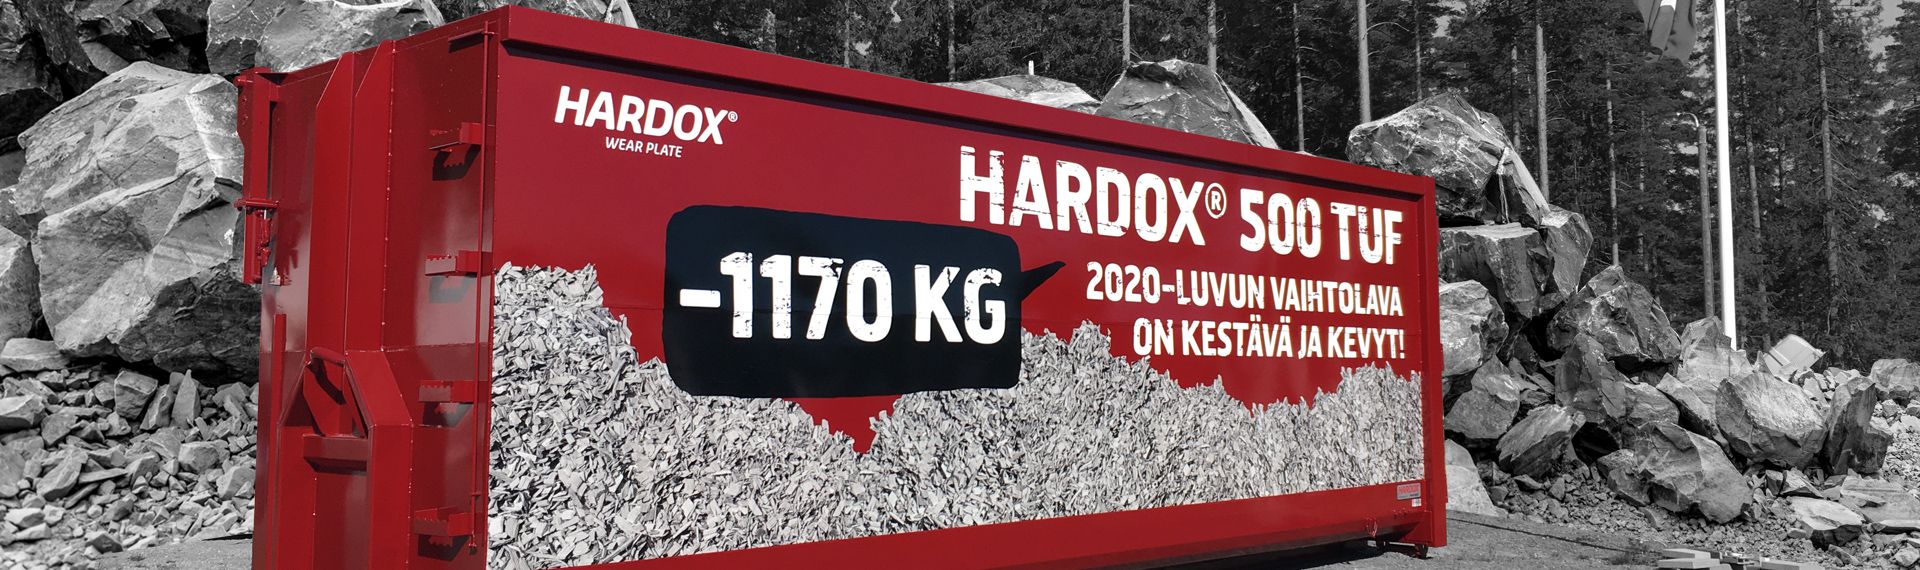 Vaihtolava valmistettu Hardox® 500 Tuf teräksestä valmiina päivän kovaan työhön